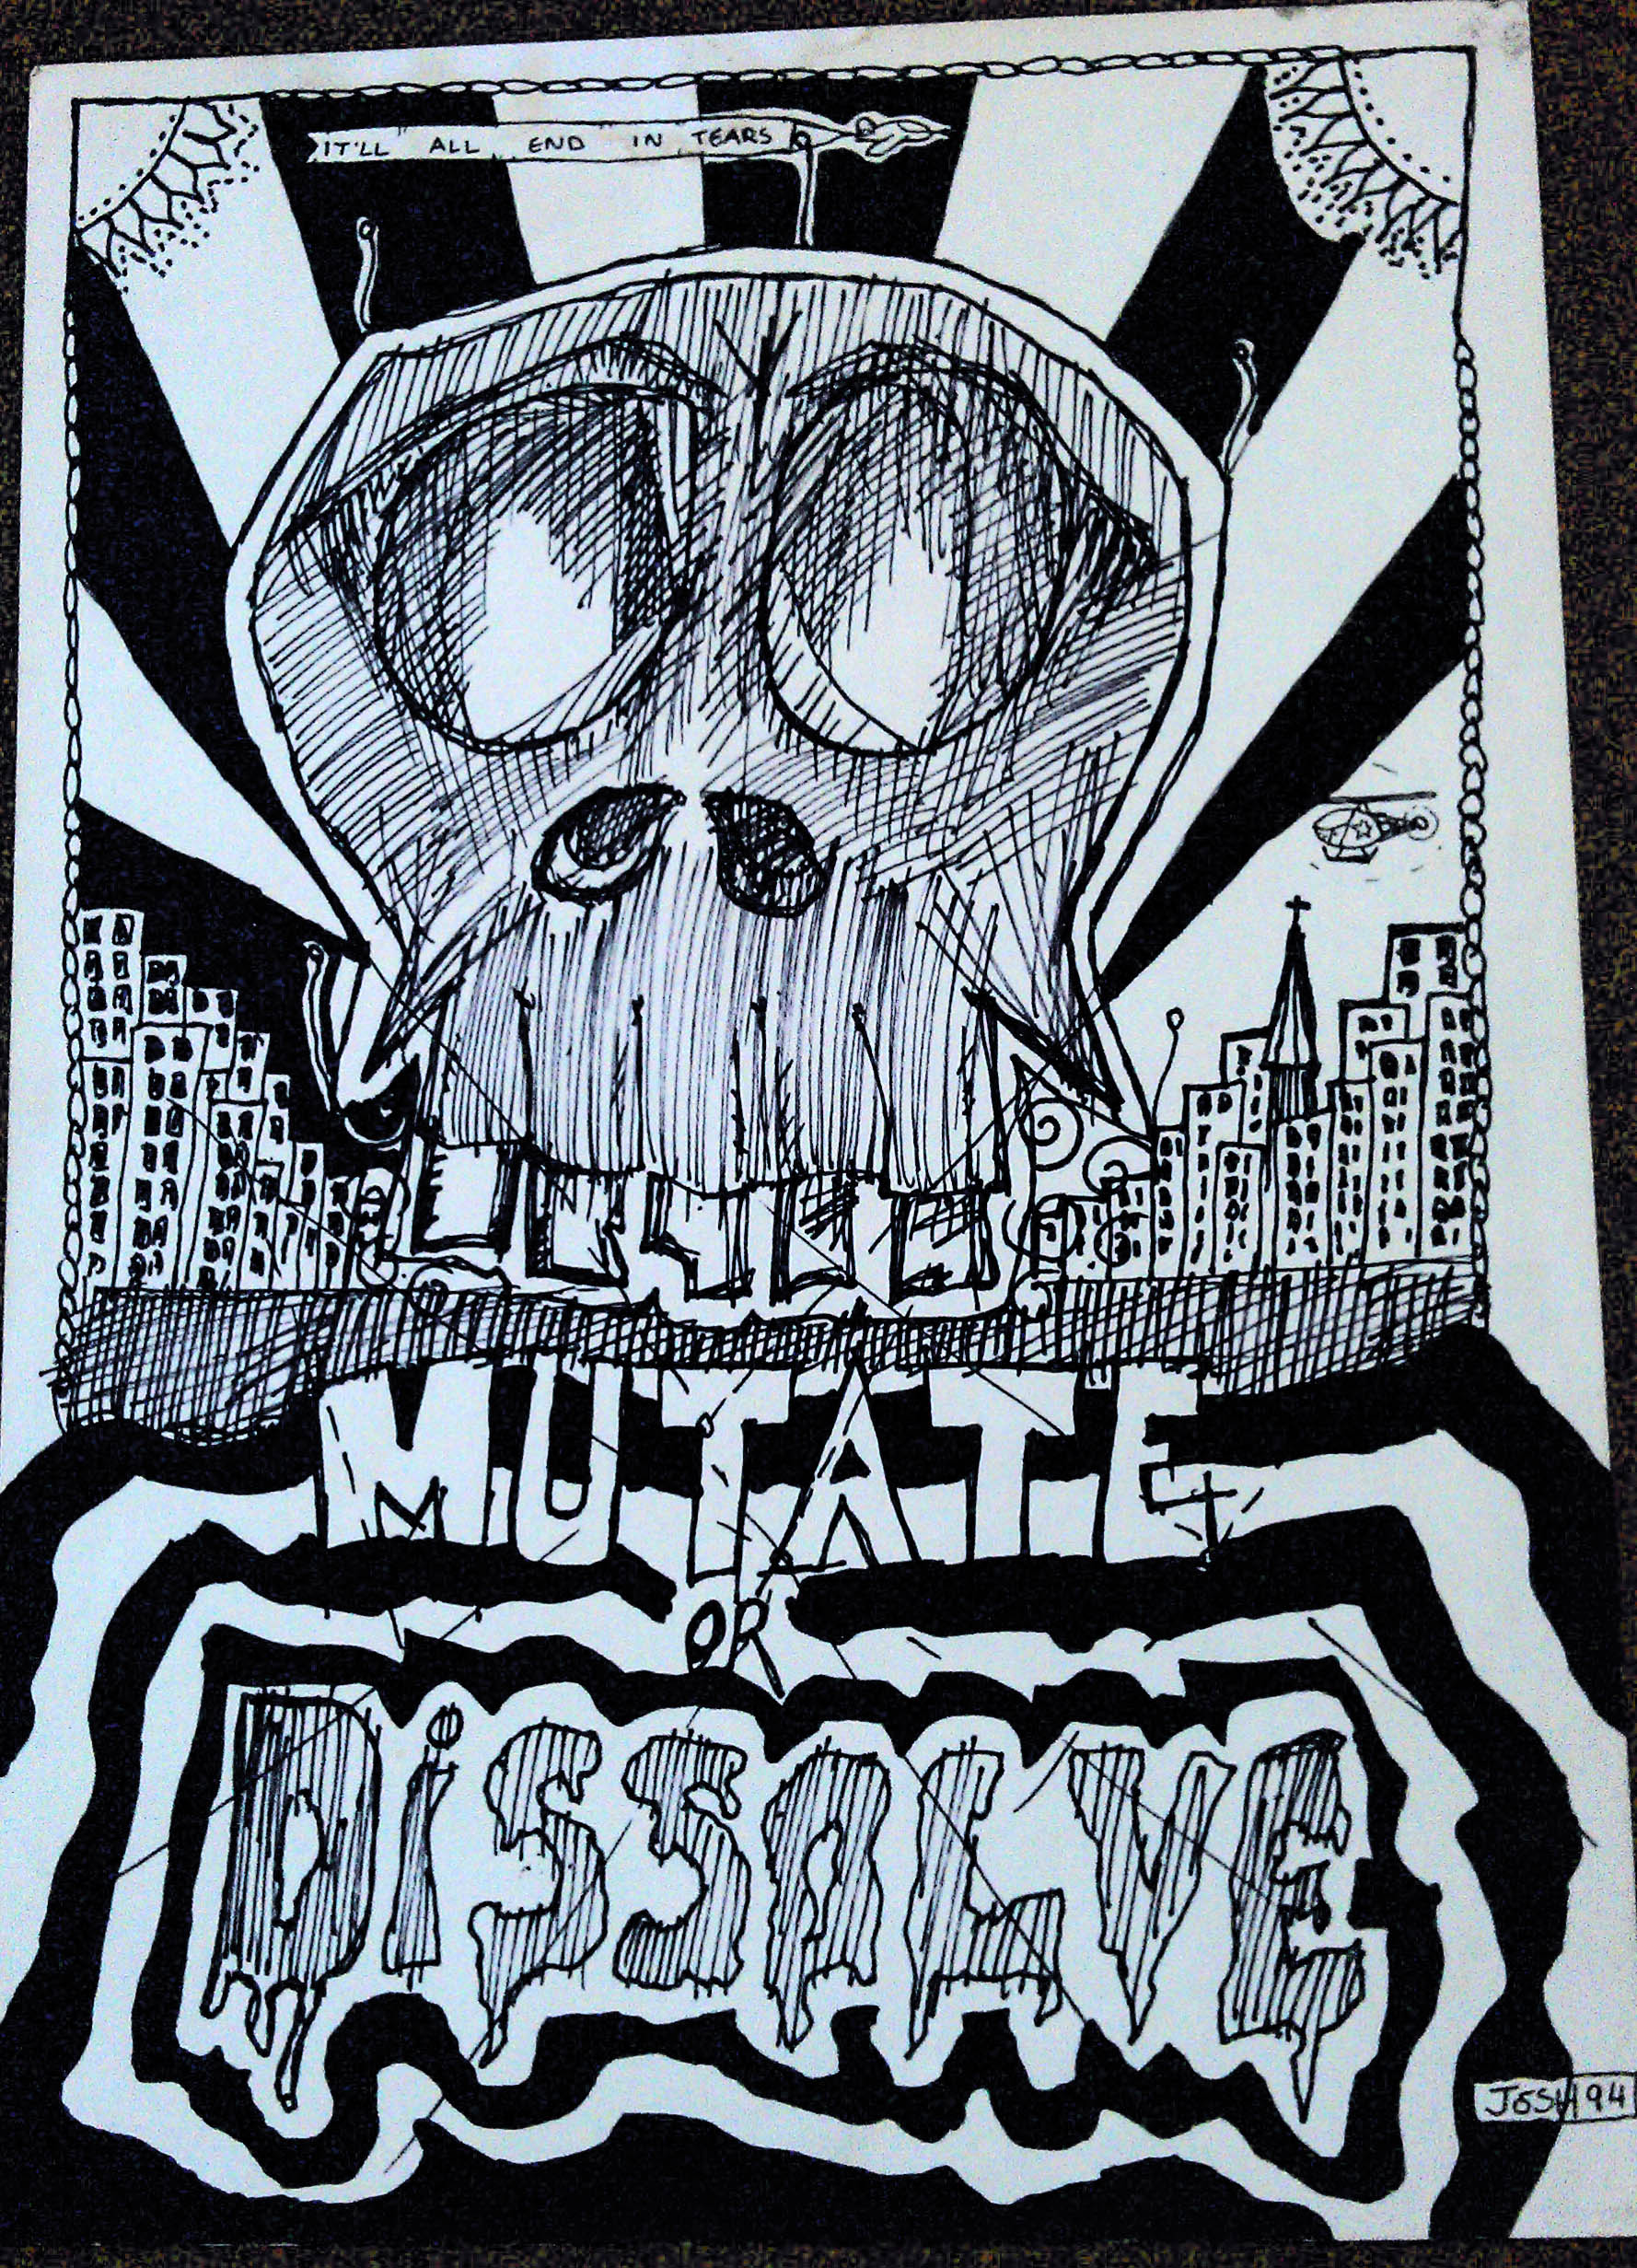 Mutate or dissolve - melting skull - black and white